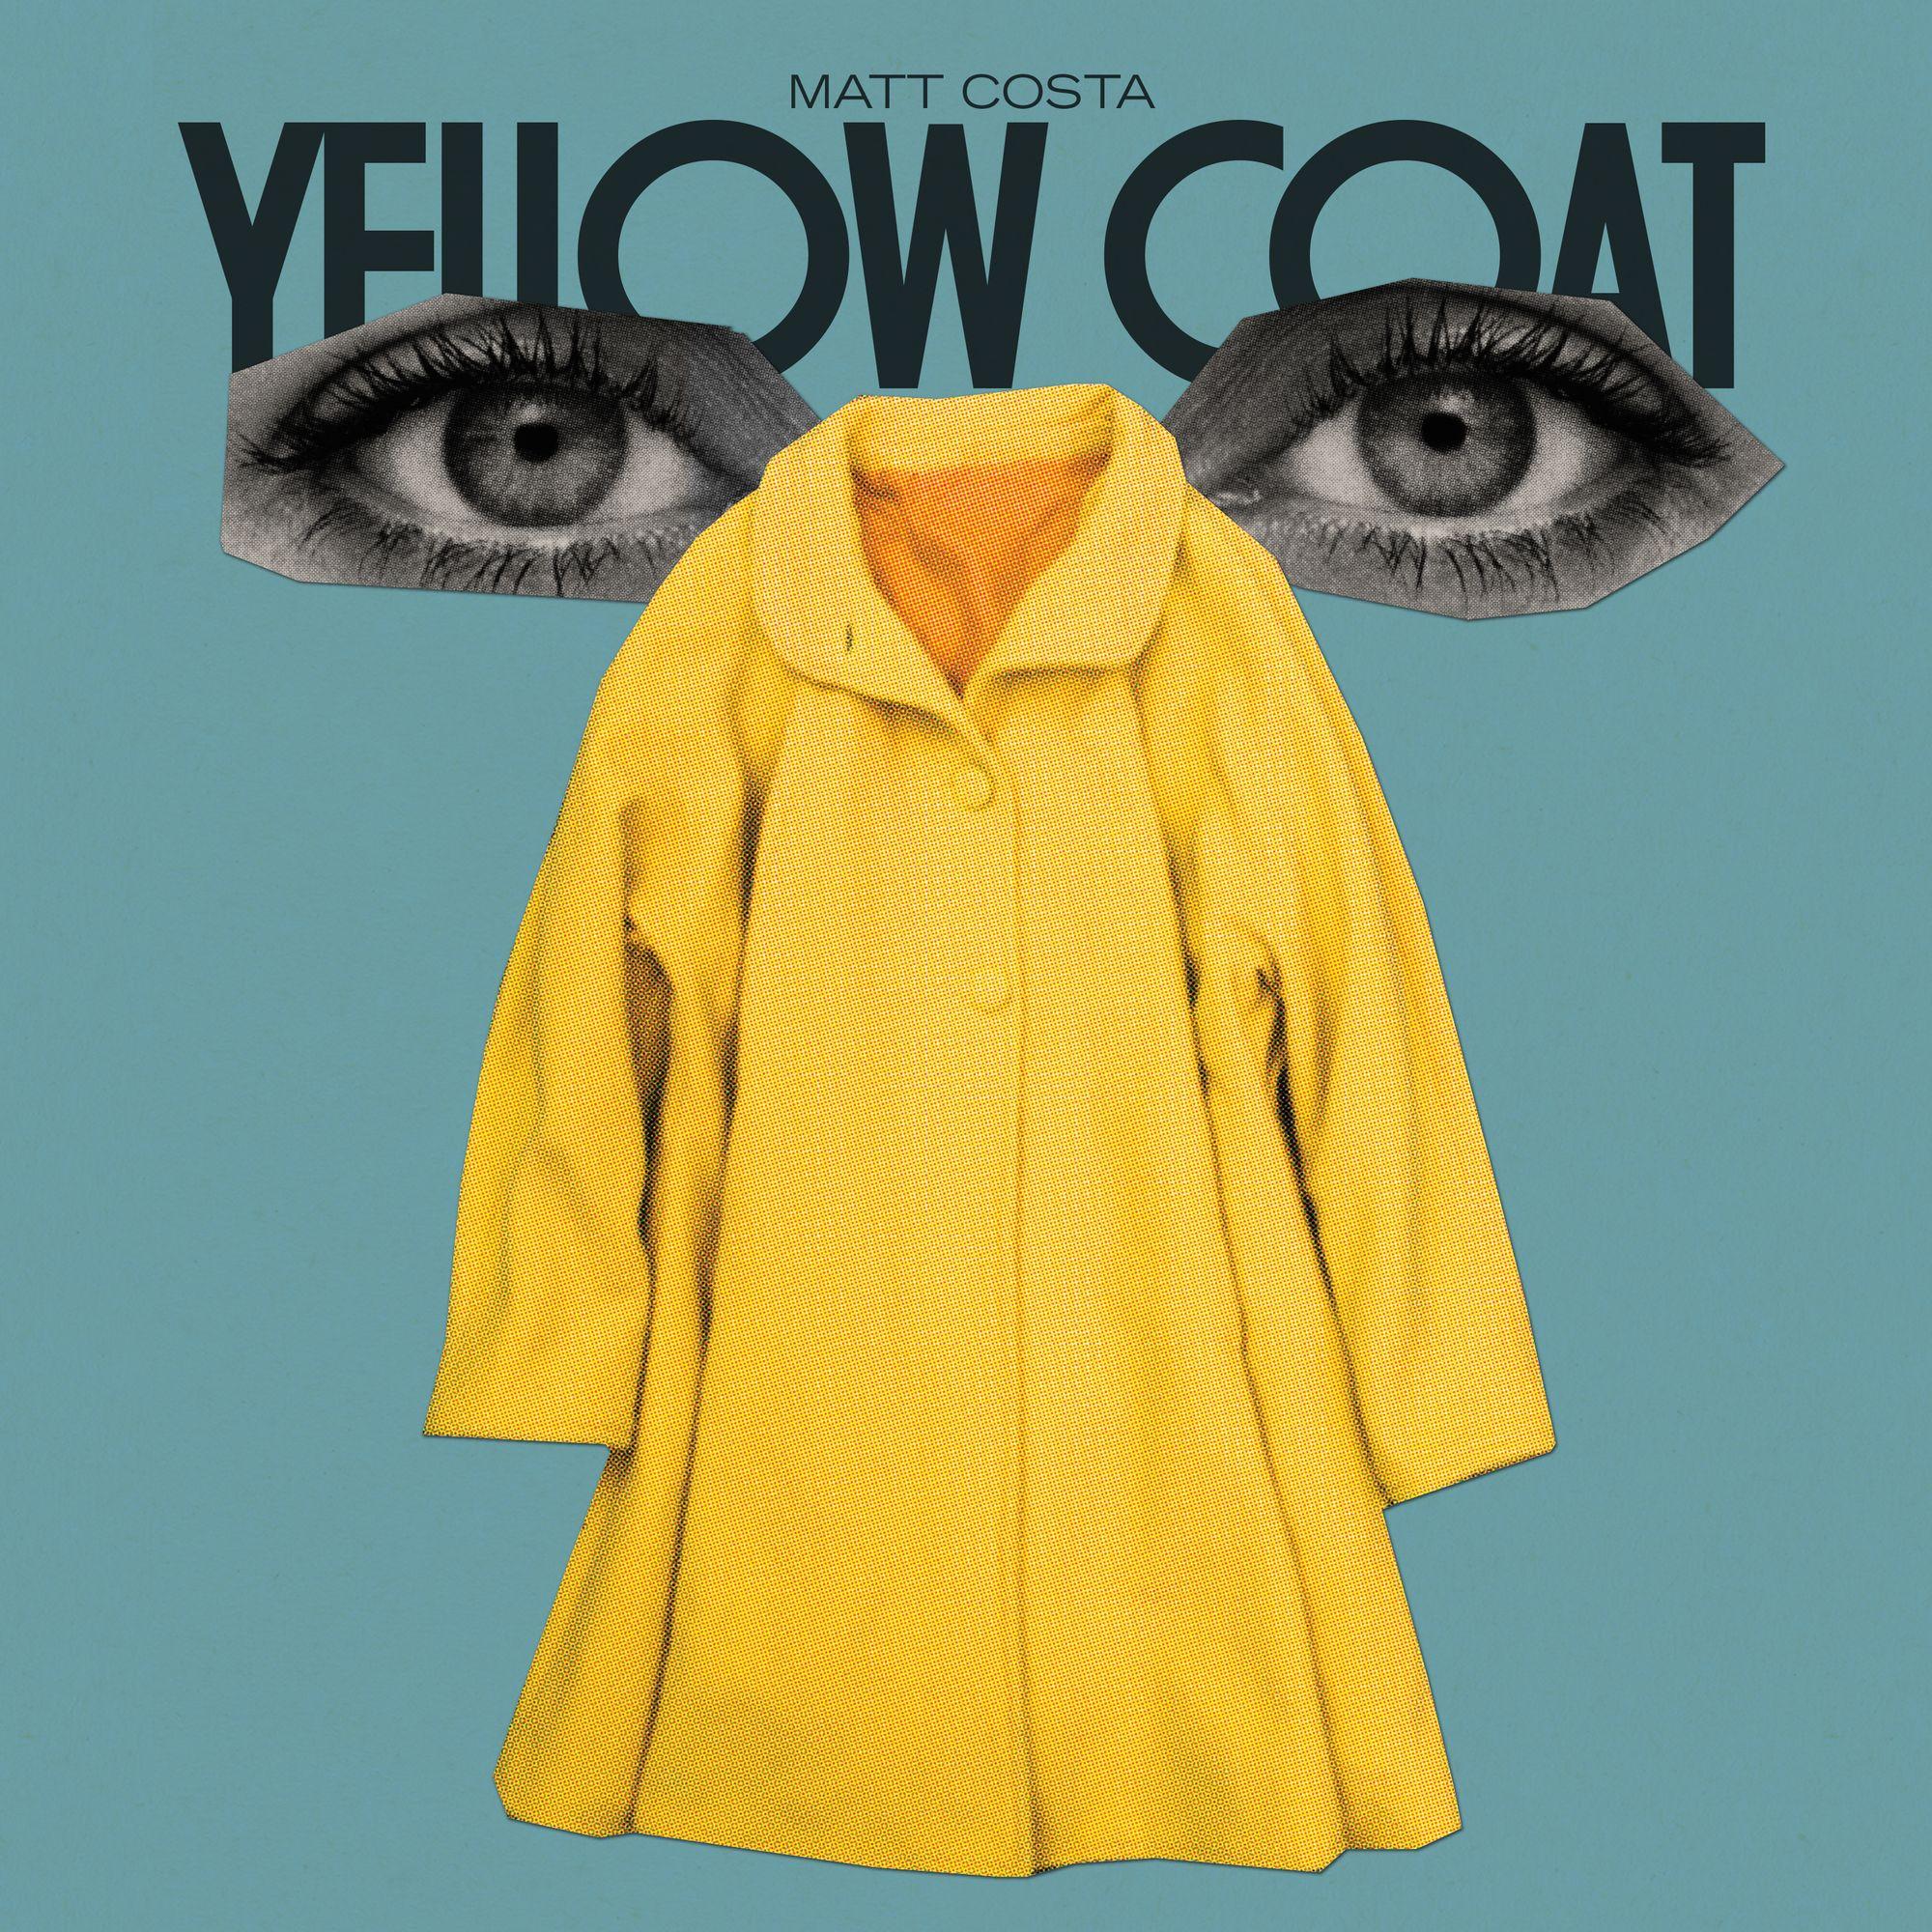 YELLOW COAT [LP]